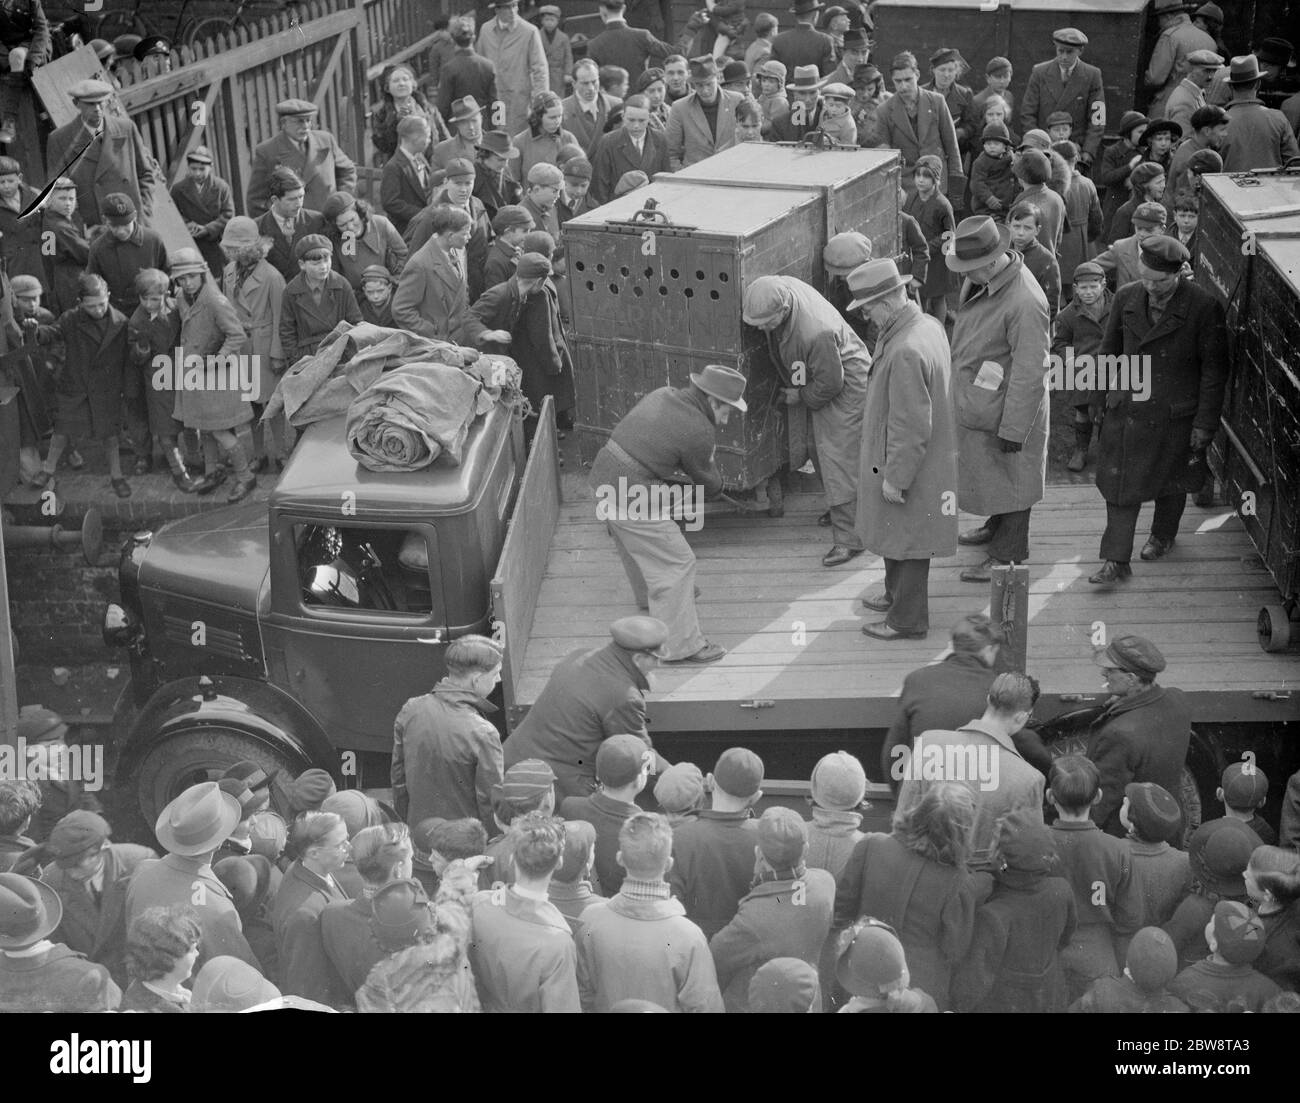 Camiones de Penfold que entregan los leones en caja a los sidings del ferrocarril para cargar en los trenes para el transporte. Una gran multitud observa como los hombres descargan uno de los leones de la parte trasera del camión. 12 de febrero de 1938 Foto de stock